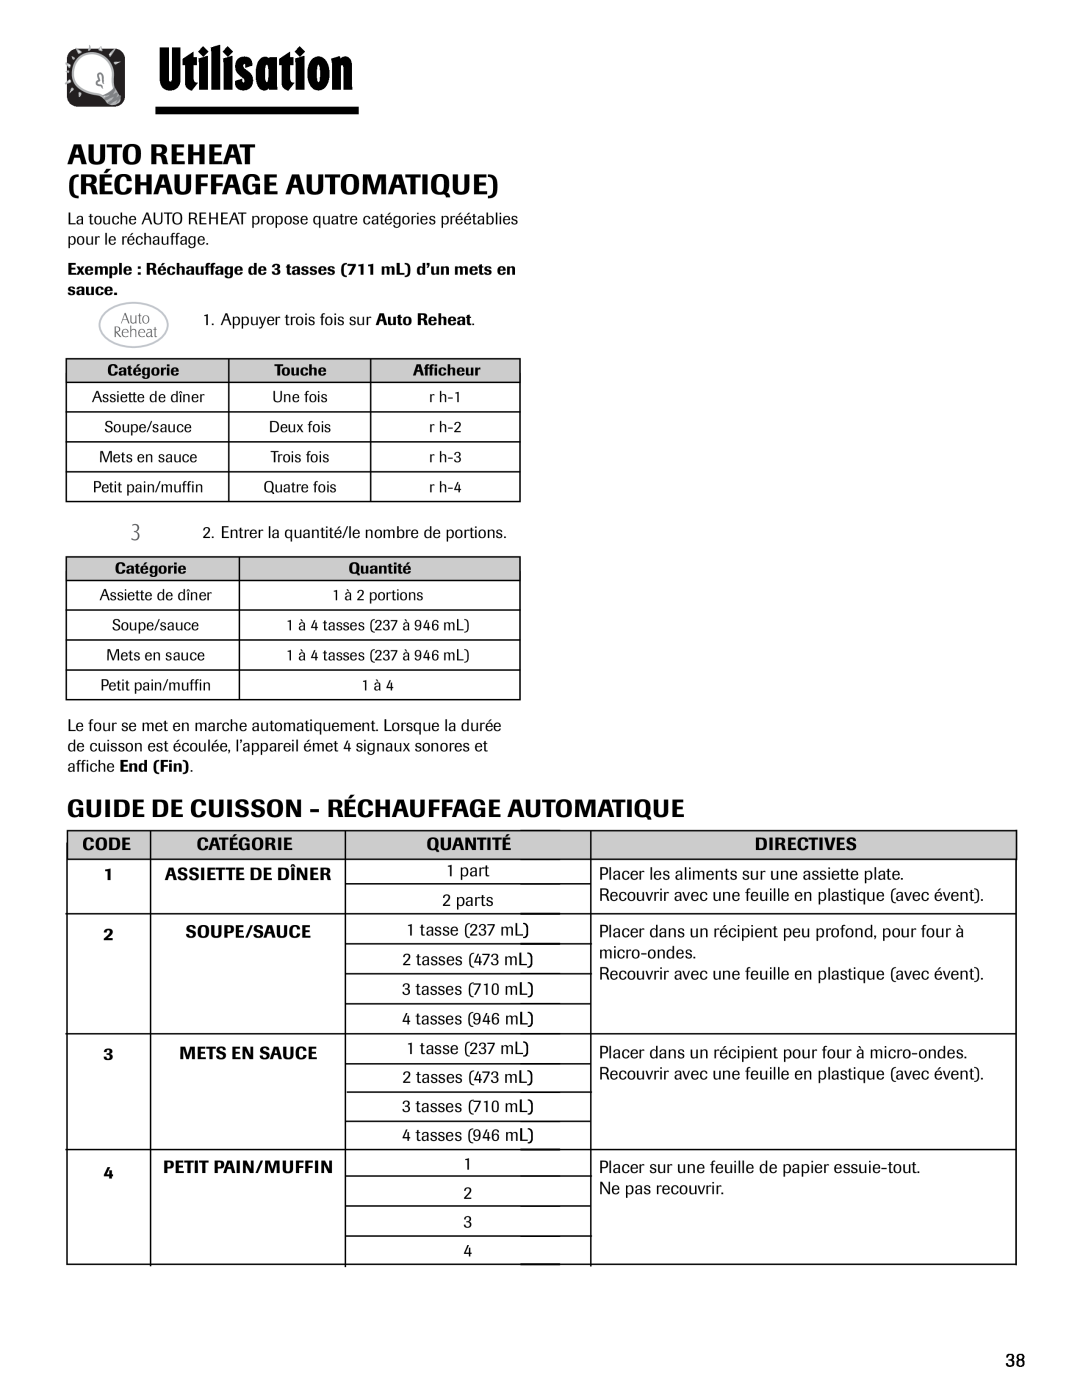 Maytag MMV1153AA Auto Reheat Réchauffage Automatique, Utilisation, Guide De Cuisson - Réchauffage Automatique 